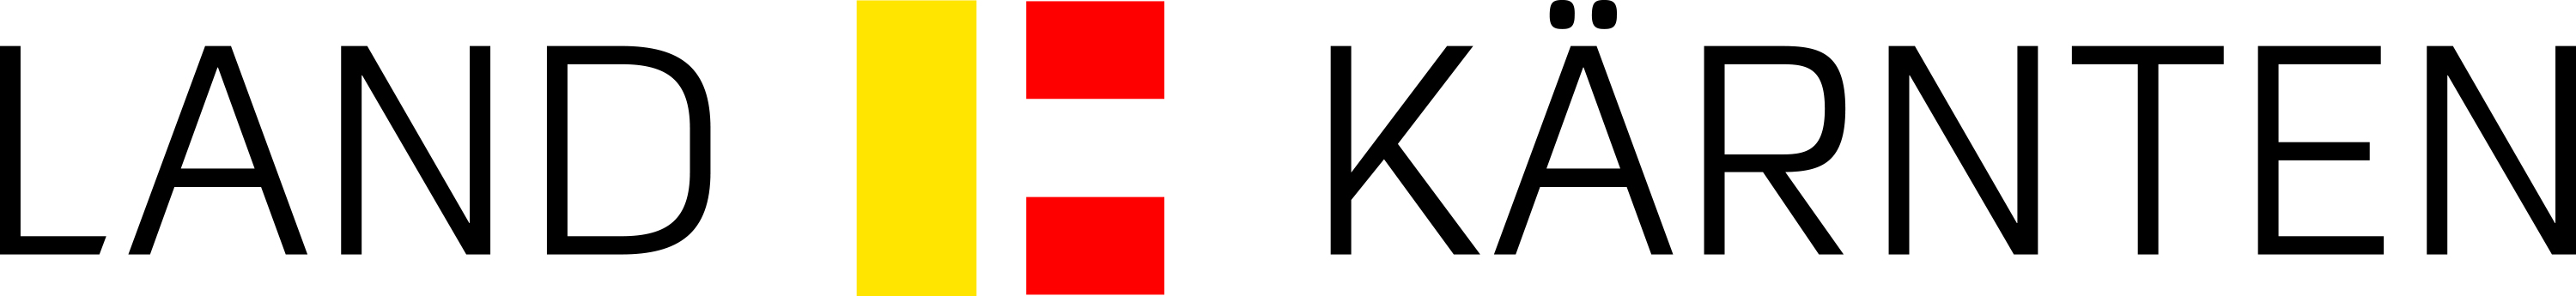 logo-LandKärnten_4c